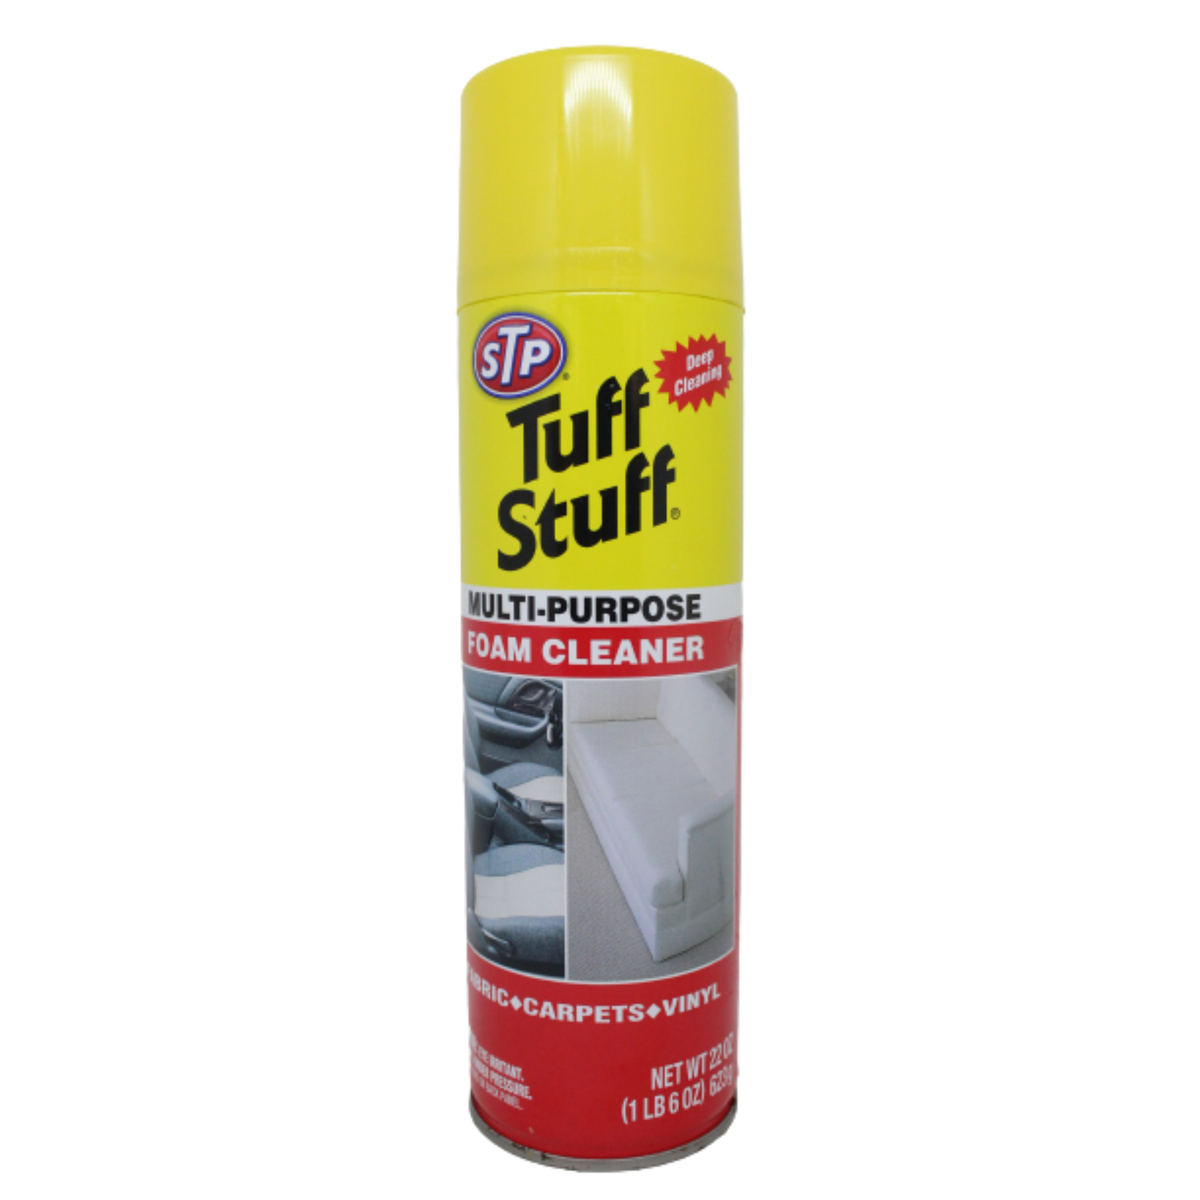 STP Tuff Stuff Foam Cleaner 623g